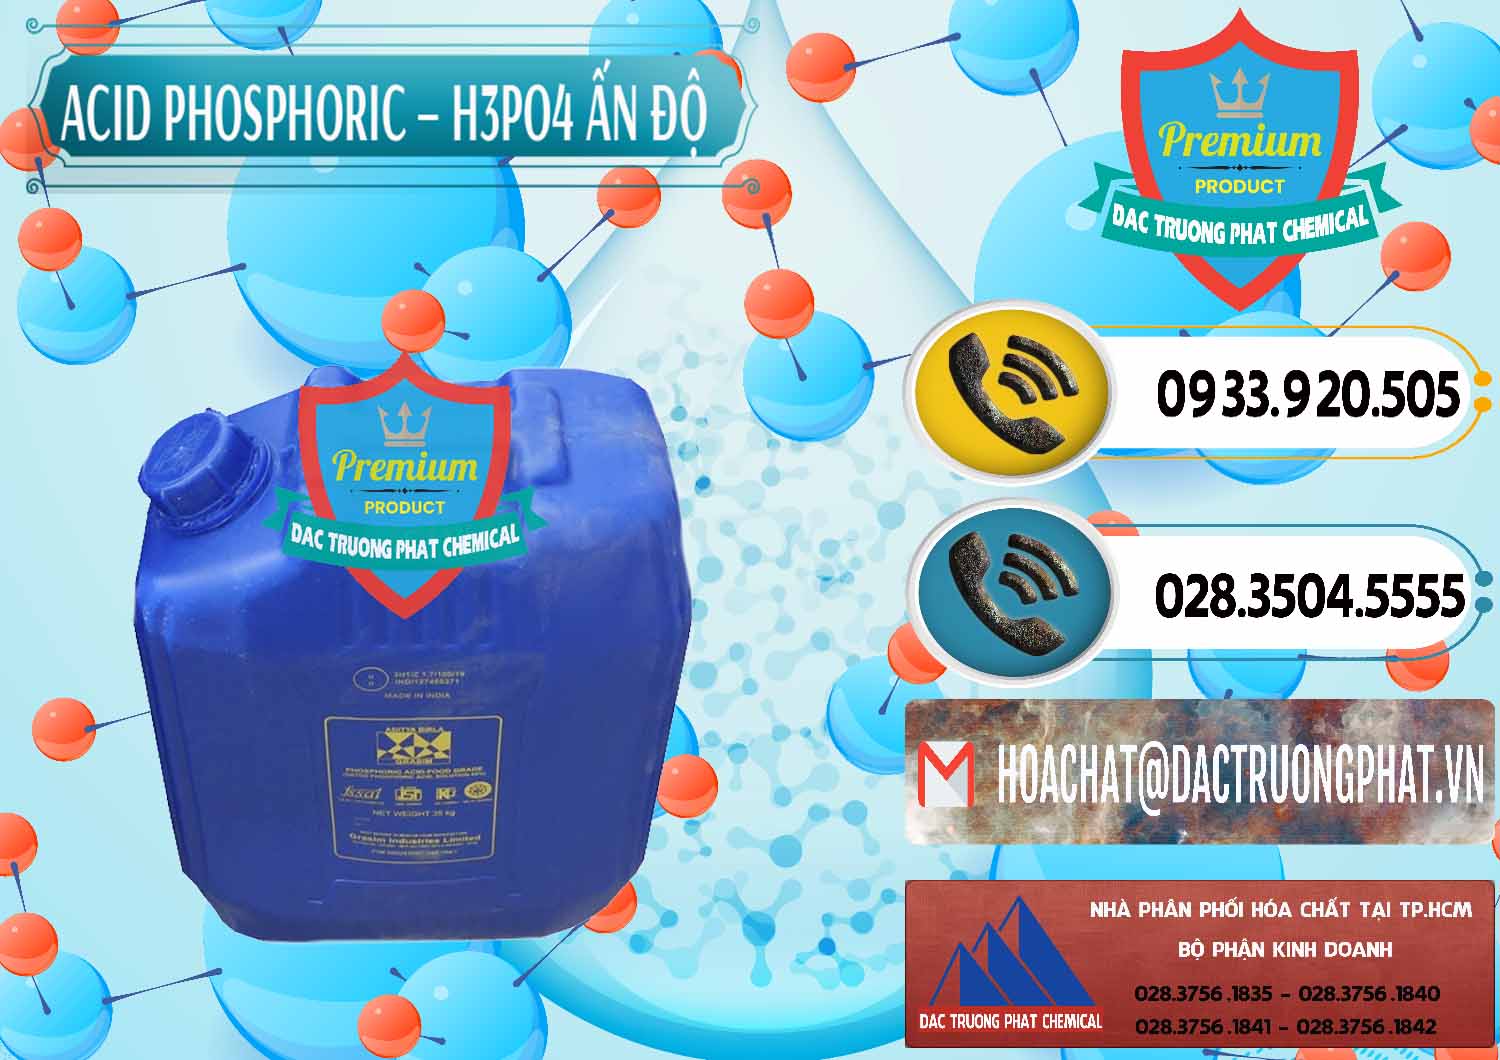 Cty bán & cung ứng Axit Phosphoric H3PO4 85% Ấn Độ - 0350 - Nơi bán & cung cấp hóa chất tại TP.HCM - hoachatdetnhuom.vn